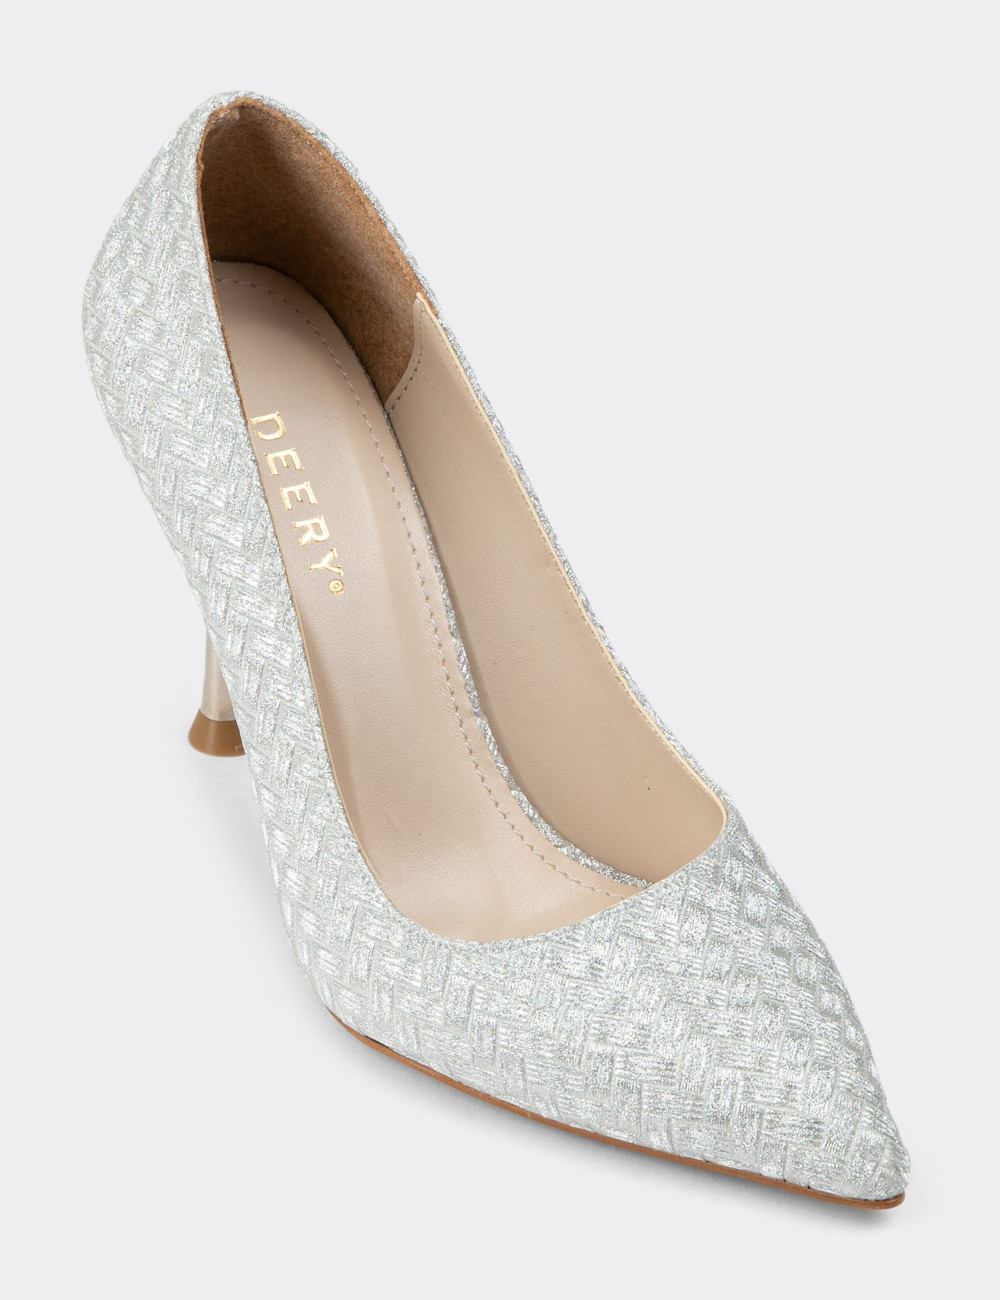 Gümüş Rengi Stiletto Kadın Topuklu Ayakkabı - 07910ZGMSM01